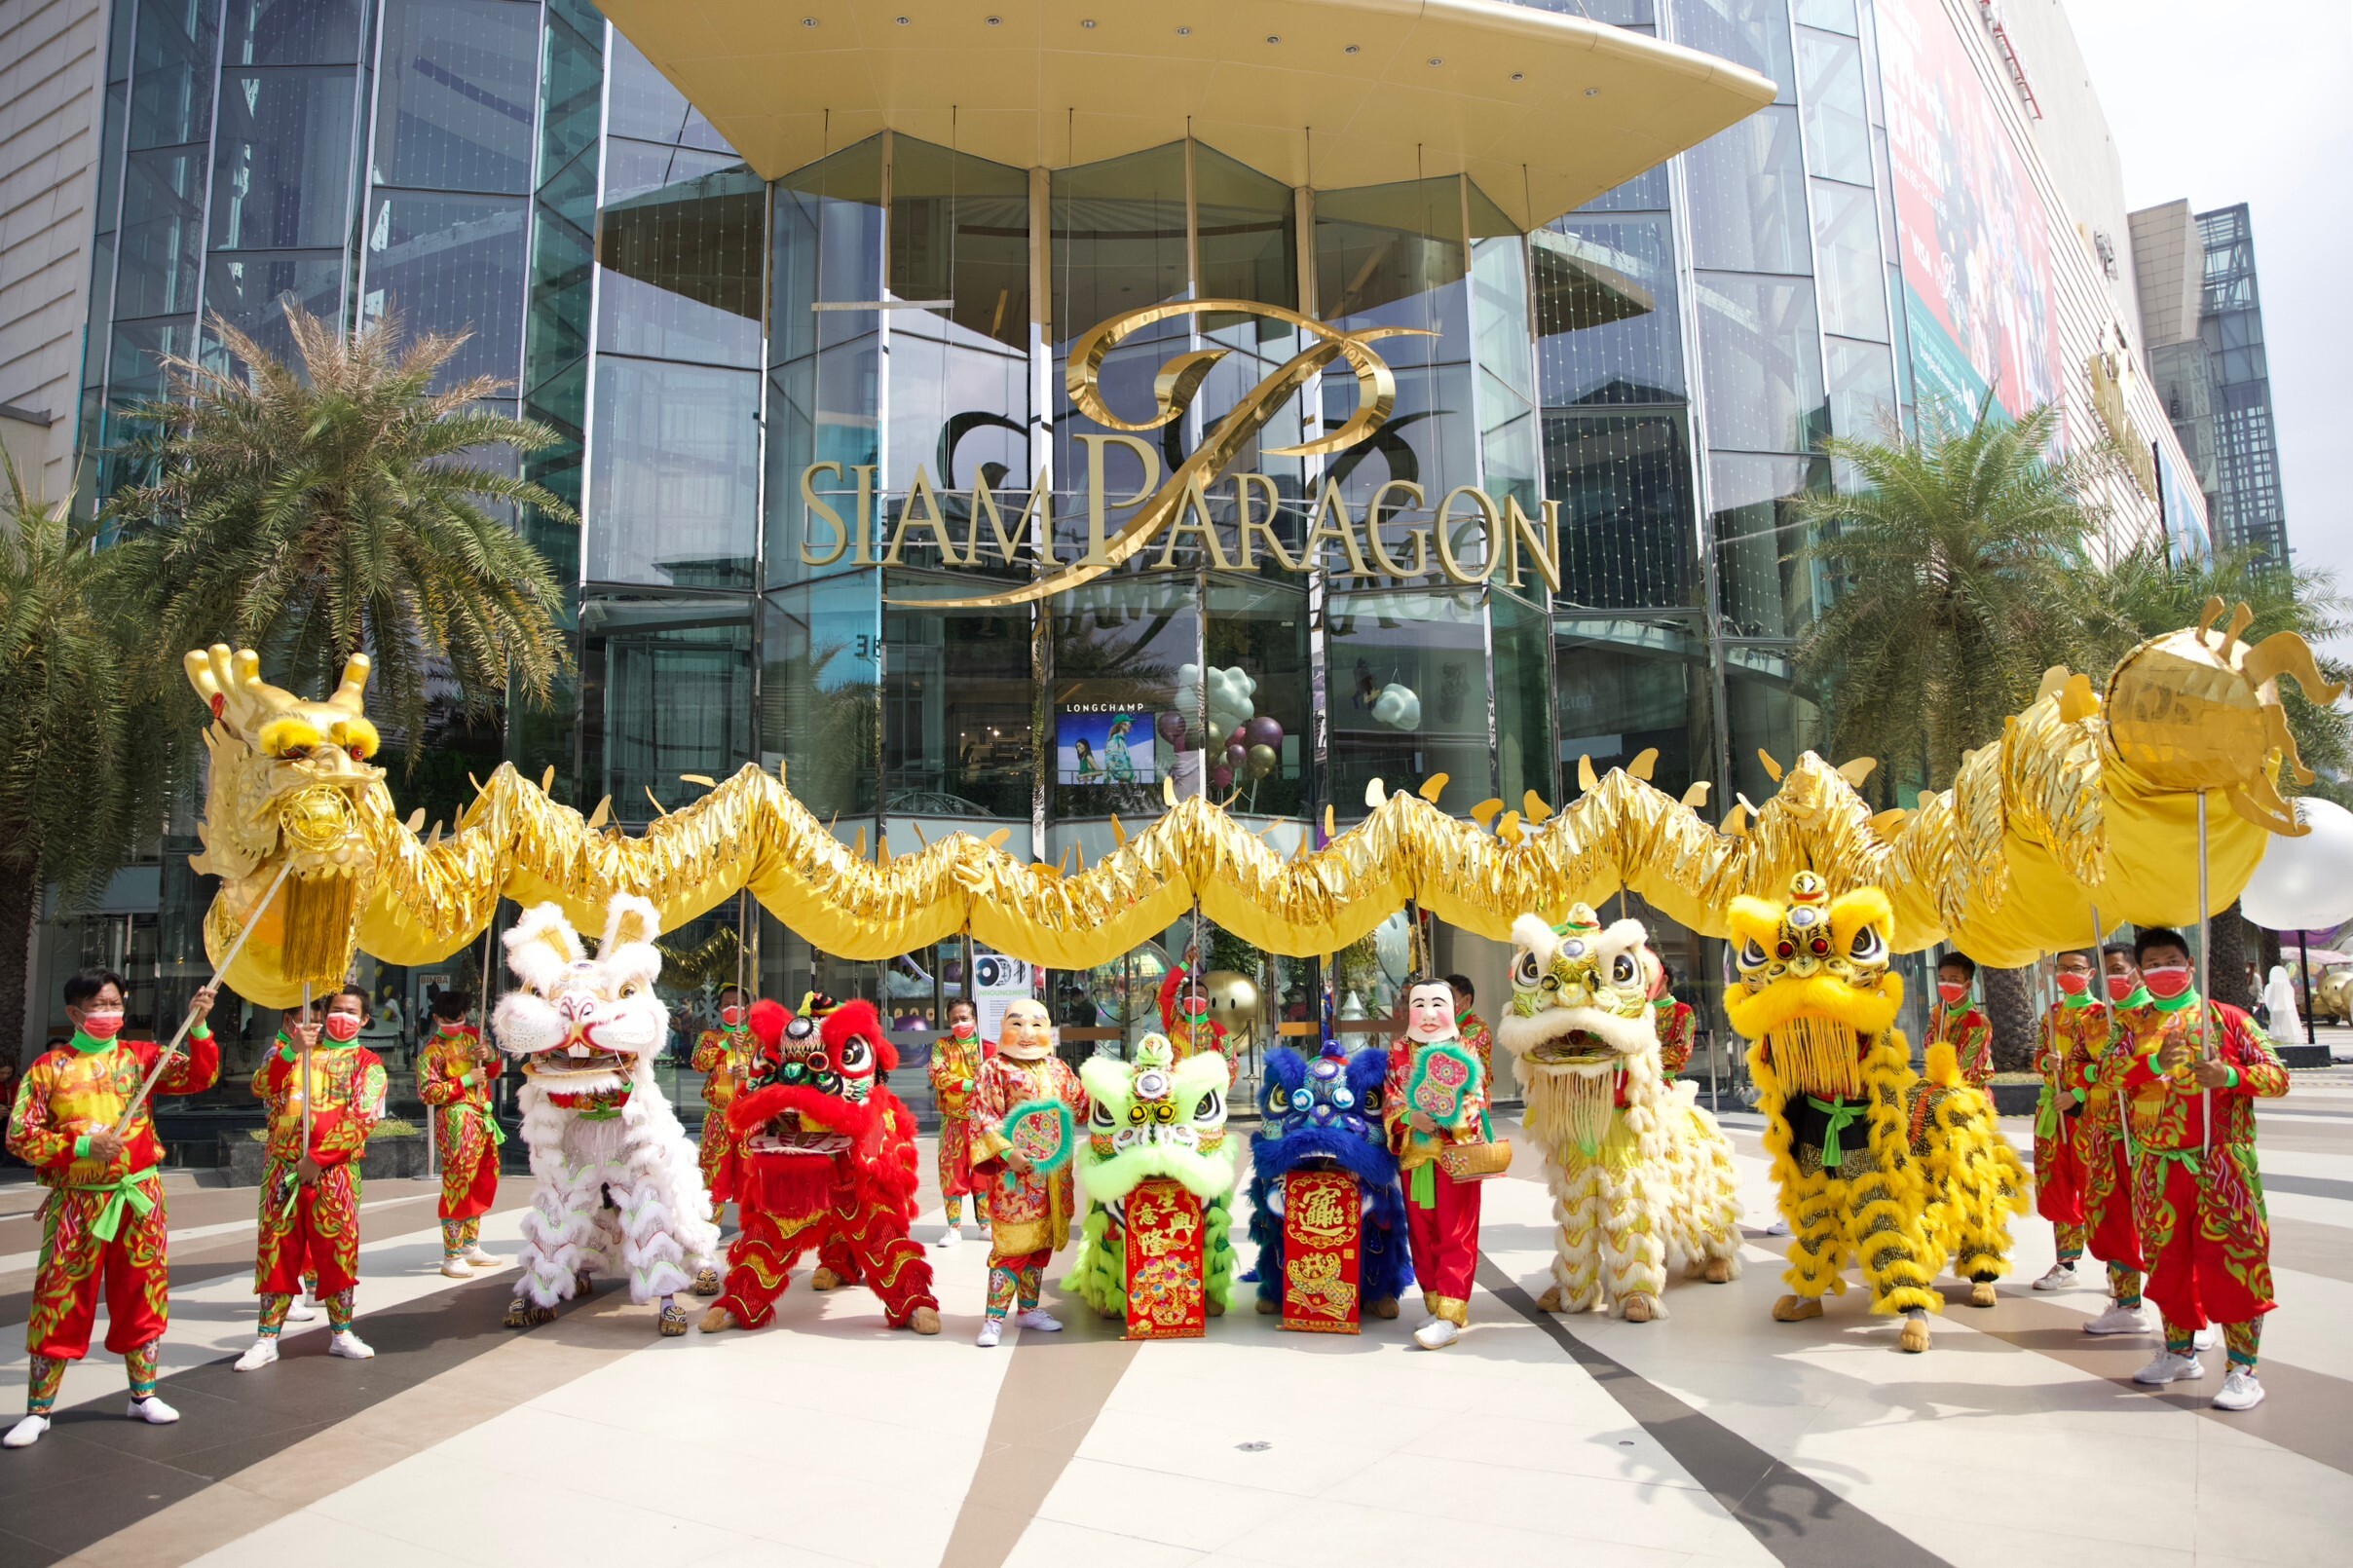 สยามพารากอน ฉลองอลังการตรุษจีนรับปีกระต่ายทองสุดยิ่งใหญ่ "Siam Paragon The Grand Celebration of Golden Prosperity 2023" 20-29 มกราคม 2566 ที่สยามพารากอน